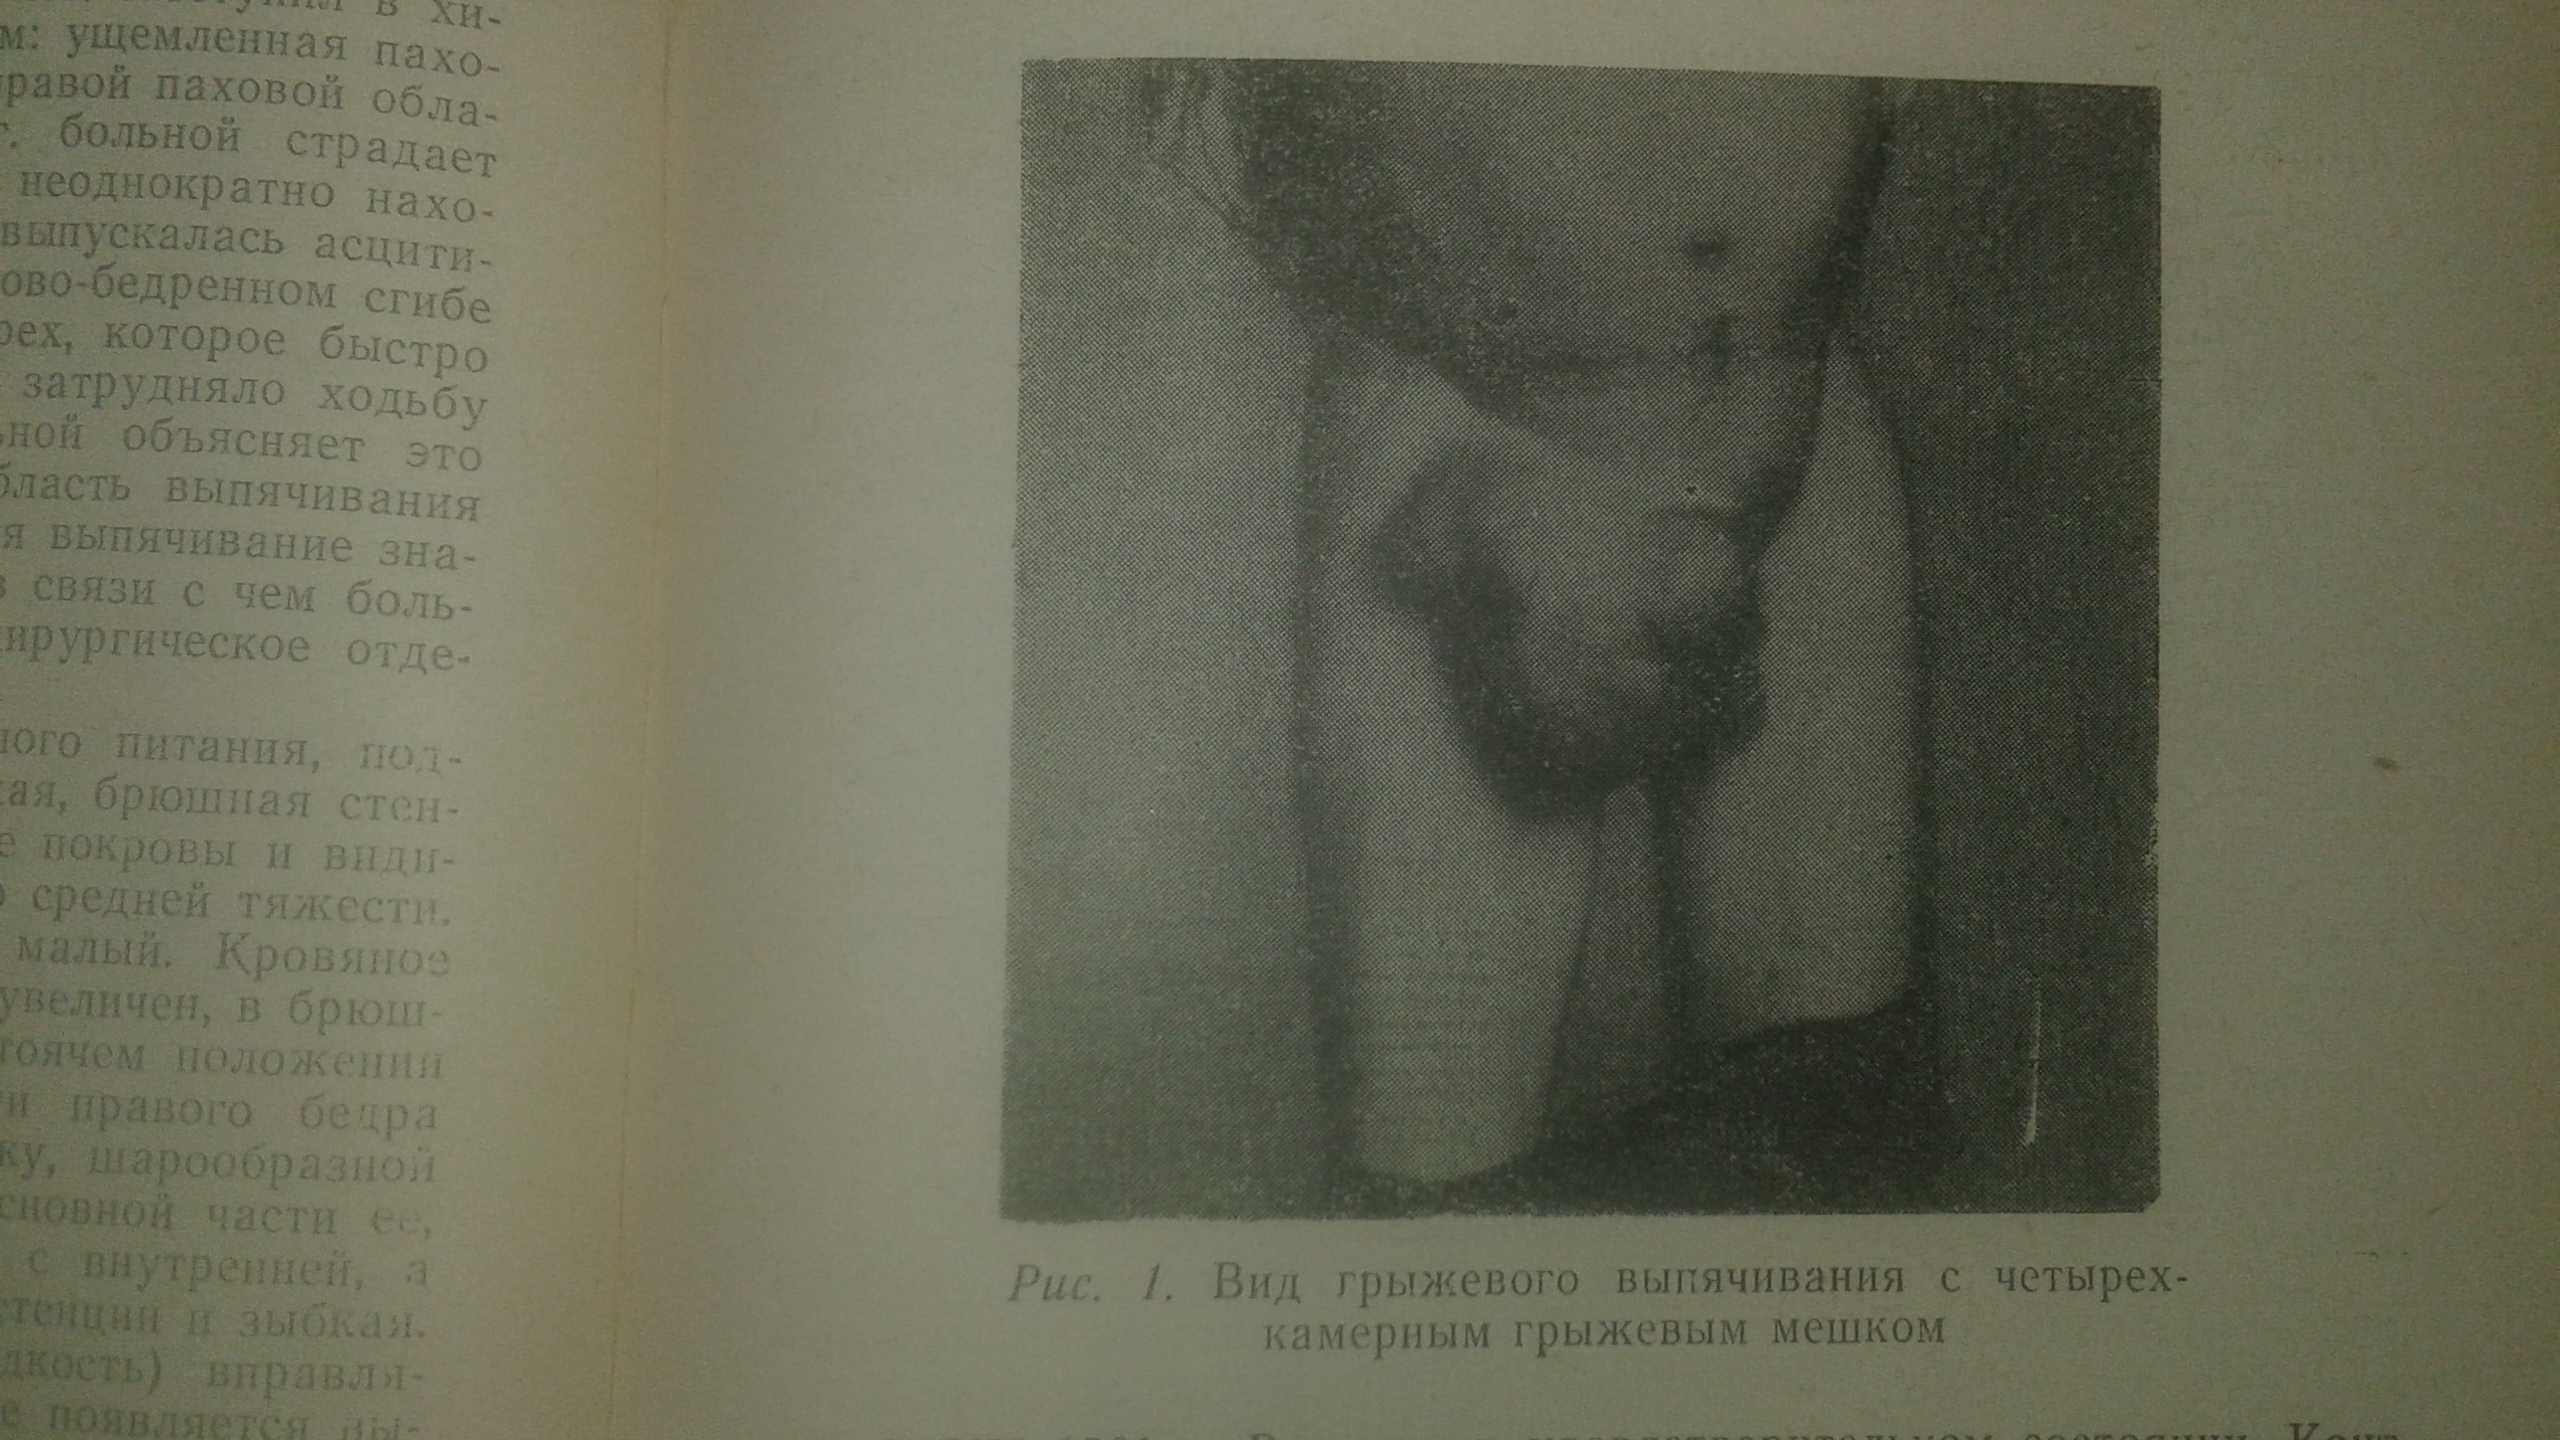 Хирургическое лечение бедренных грыж 1966 год